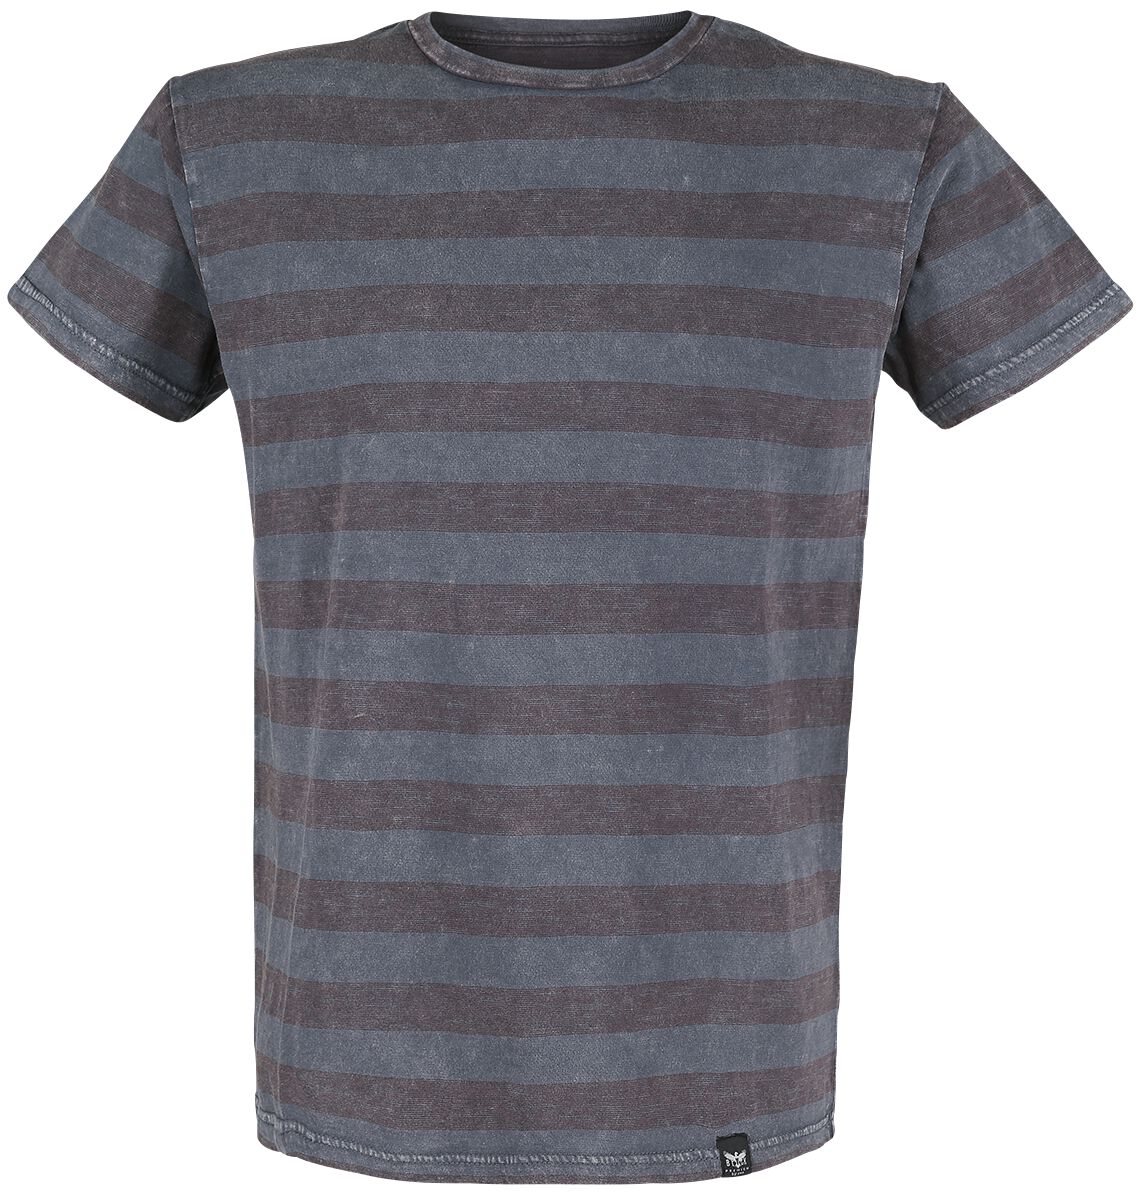 Black Premium by EMP T-Shirt - graues T-Shirt mit Querstreifen und Rundhalsausschnitt - S bis 5XL - für Männer - Größe S - grau